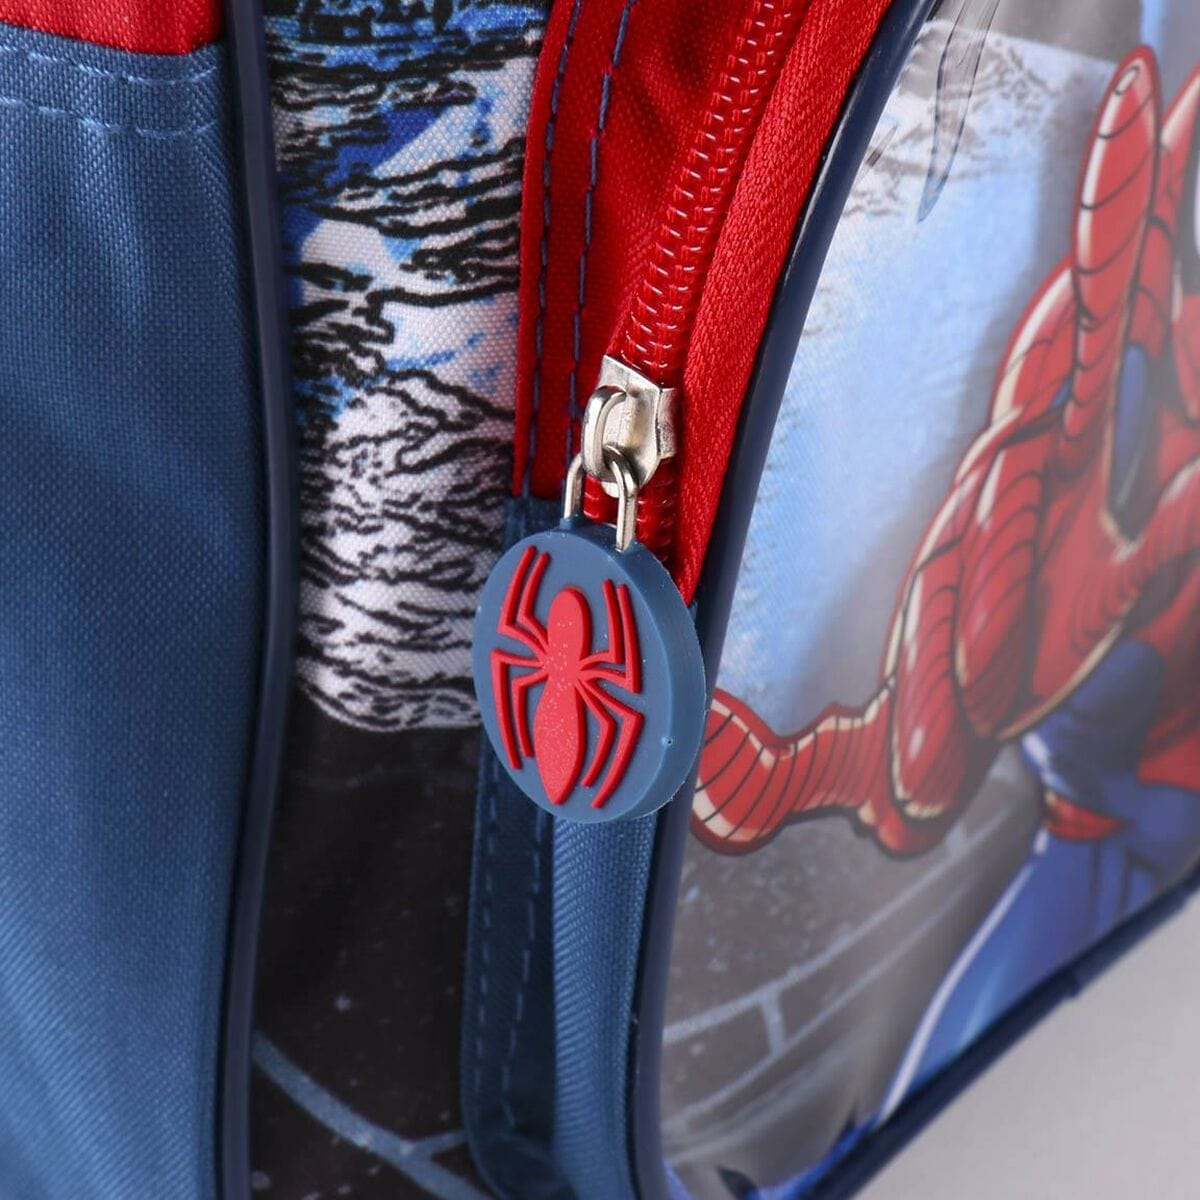 Spiderman Spielzeug | Kostüme > Schulzubehör > Schulranzen Schulrucksack Spiderman Rot (25 x 30 x 12 cm)